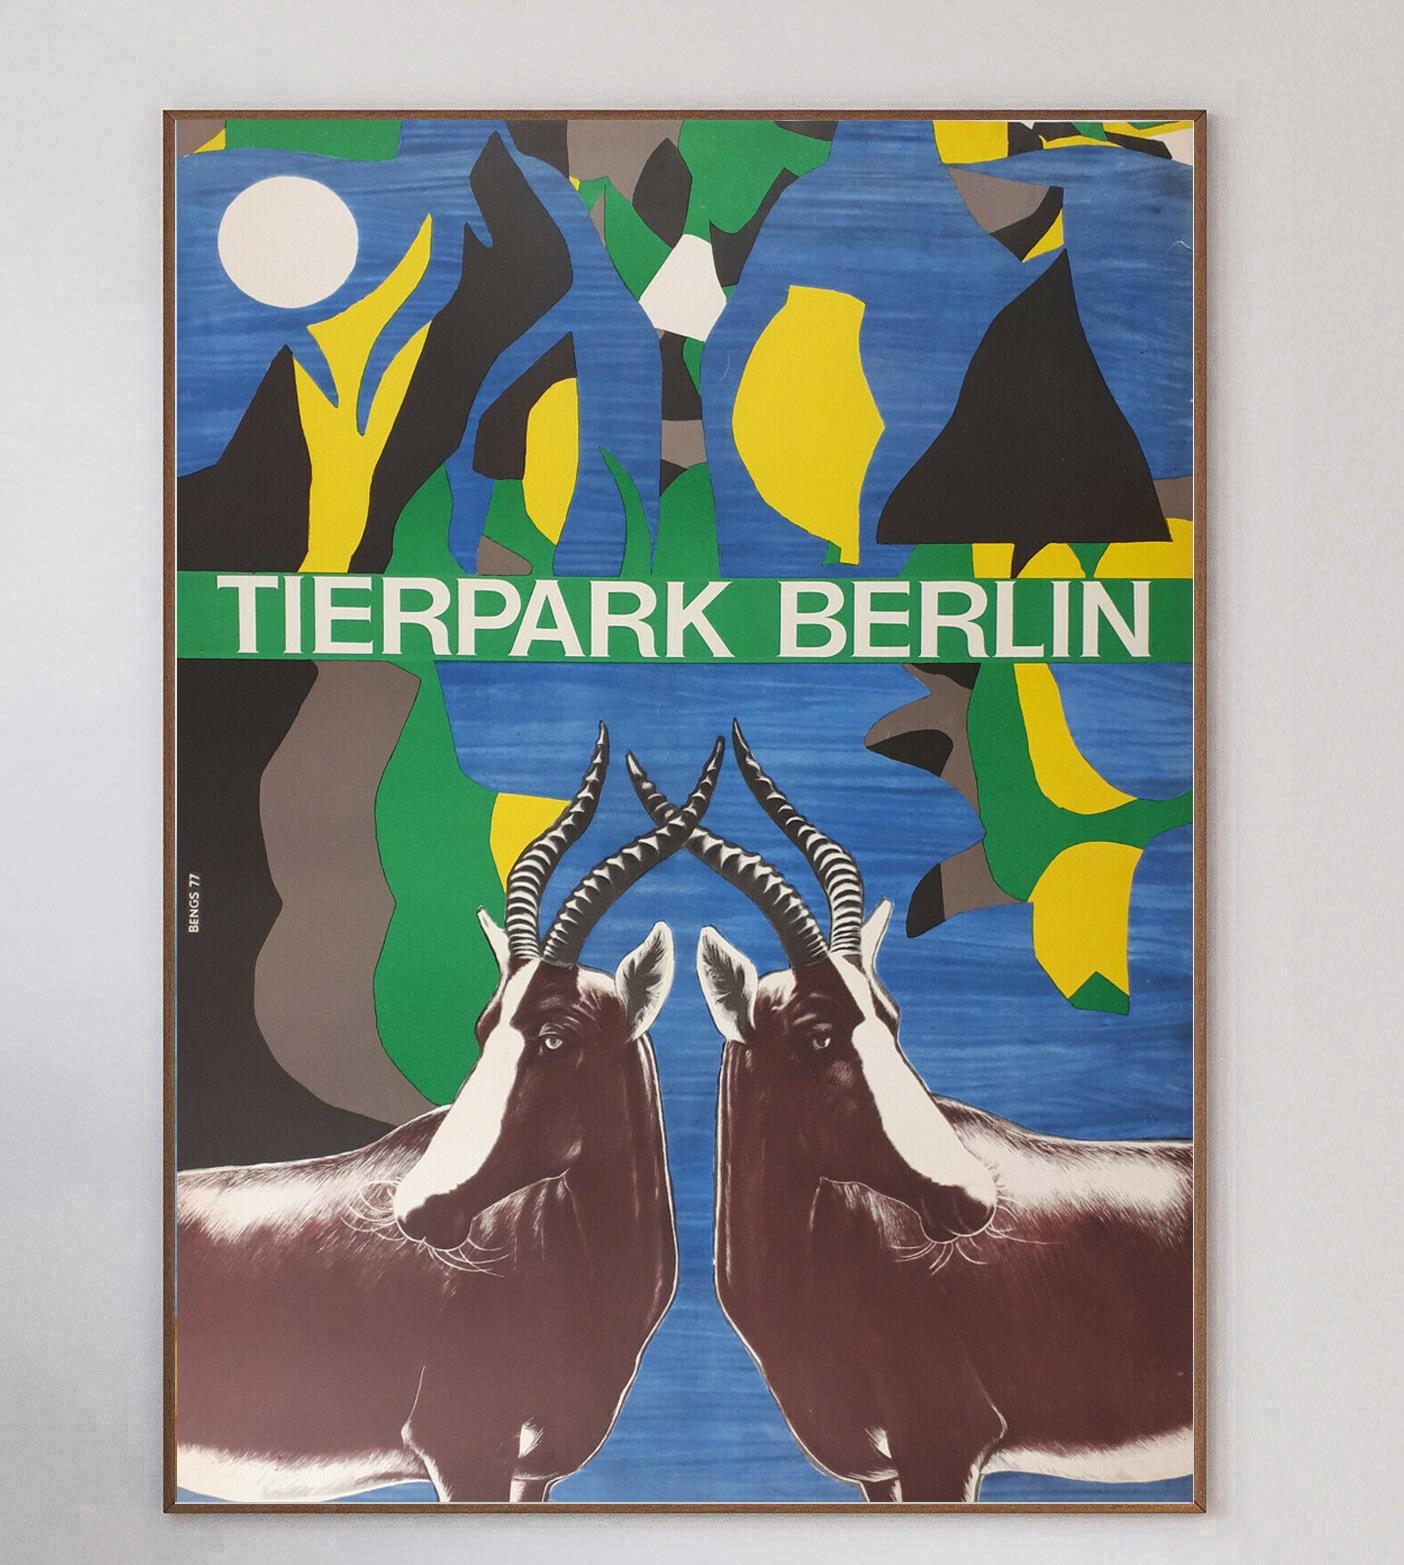 Wunderschönes Plakat aus dem Jahr 1977 mit einer fantastischen Grafik von Axel Bengs, die eine Antilope für den Tierpark Berlin darstellt. Der 1955 in Friedrichsfelde gegründete Zoo sollte dem Zoologischen Garten Berlin, dem ältesten Zoo in